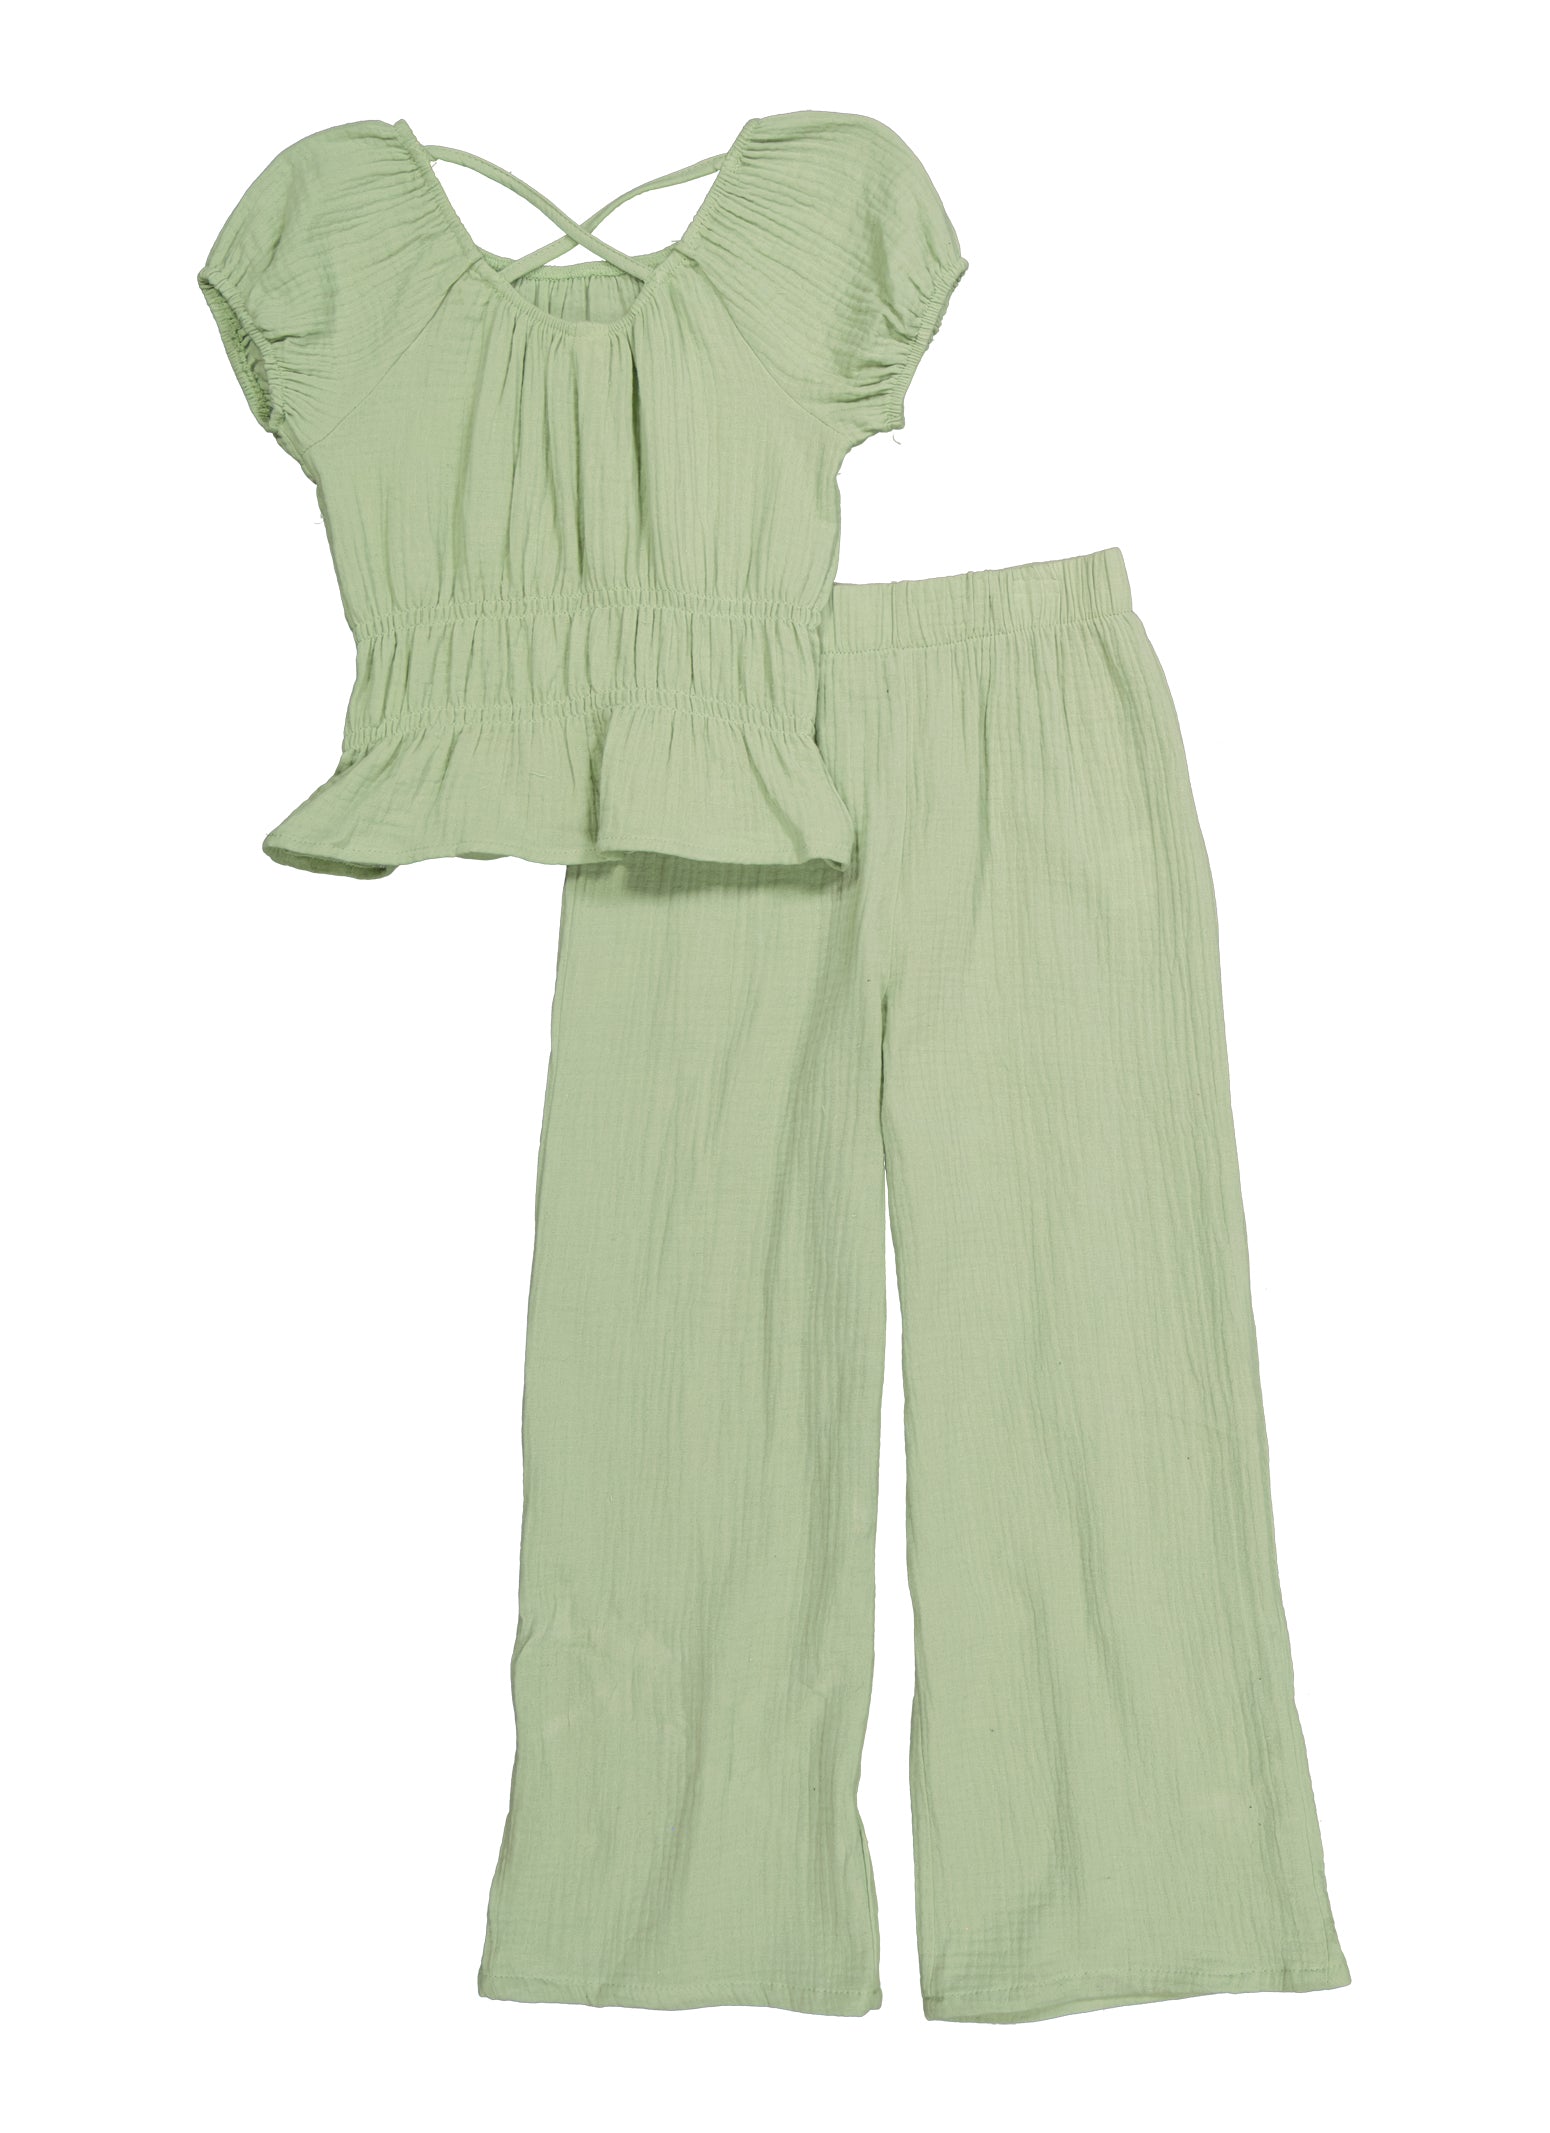 Girls Cotton Woven Peplum Top and Wide Leg Pants - Green